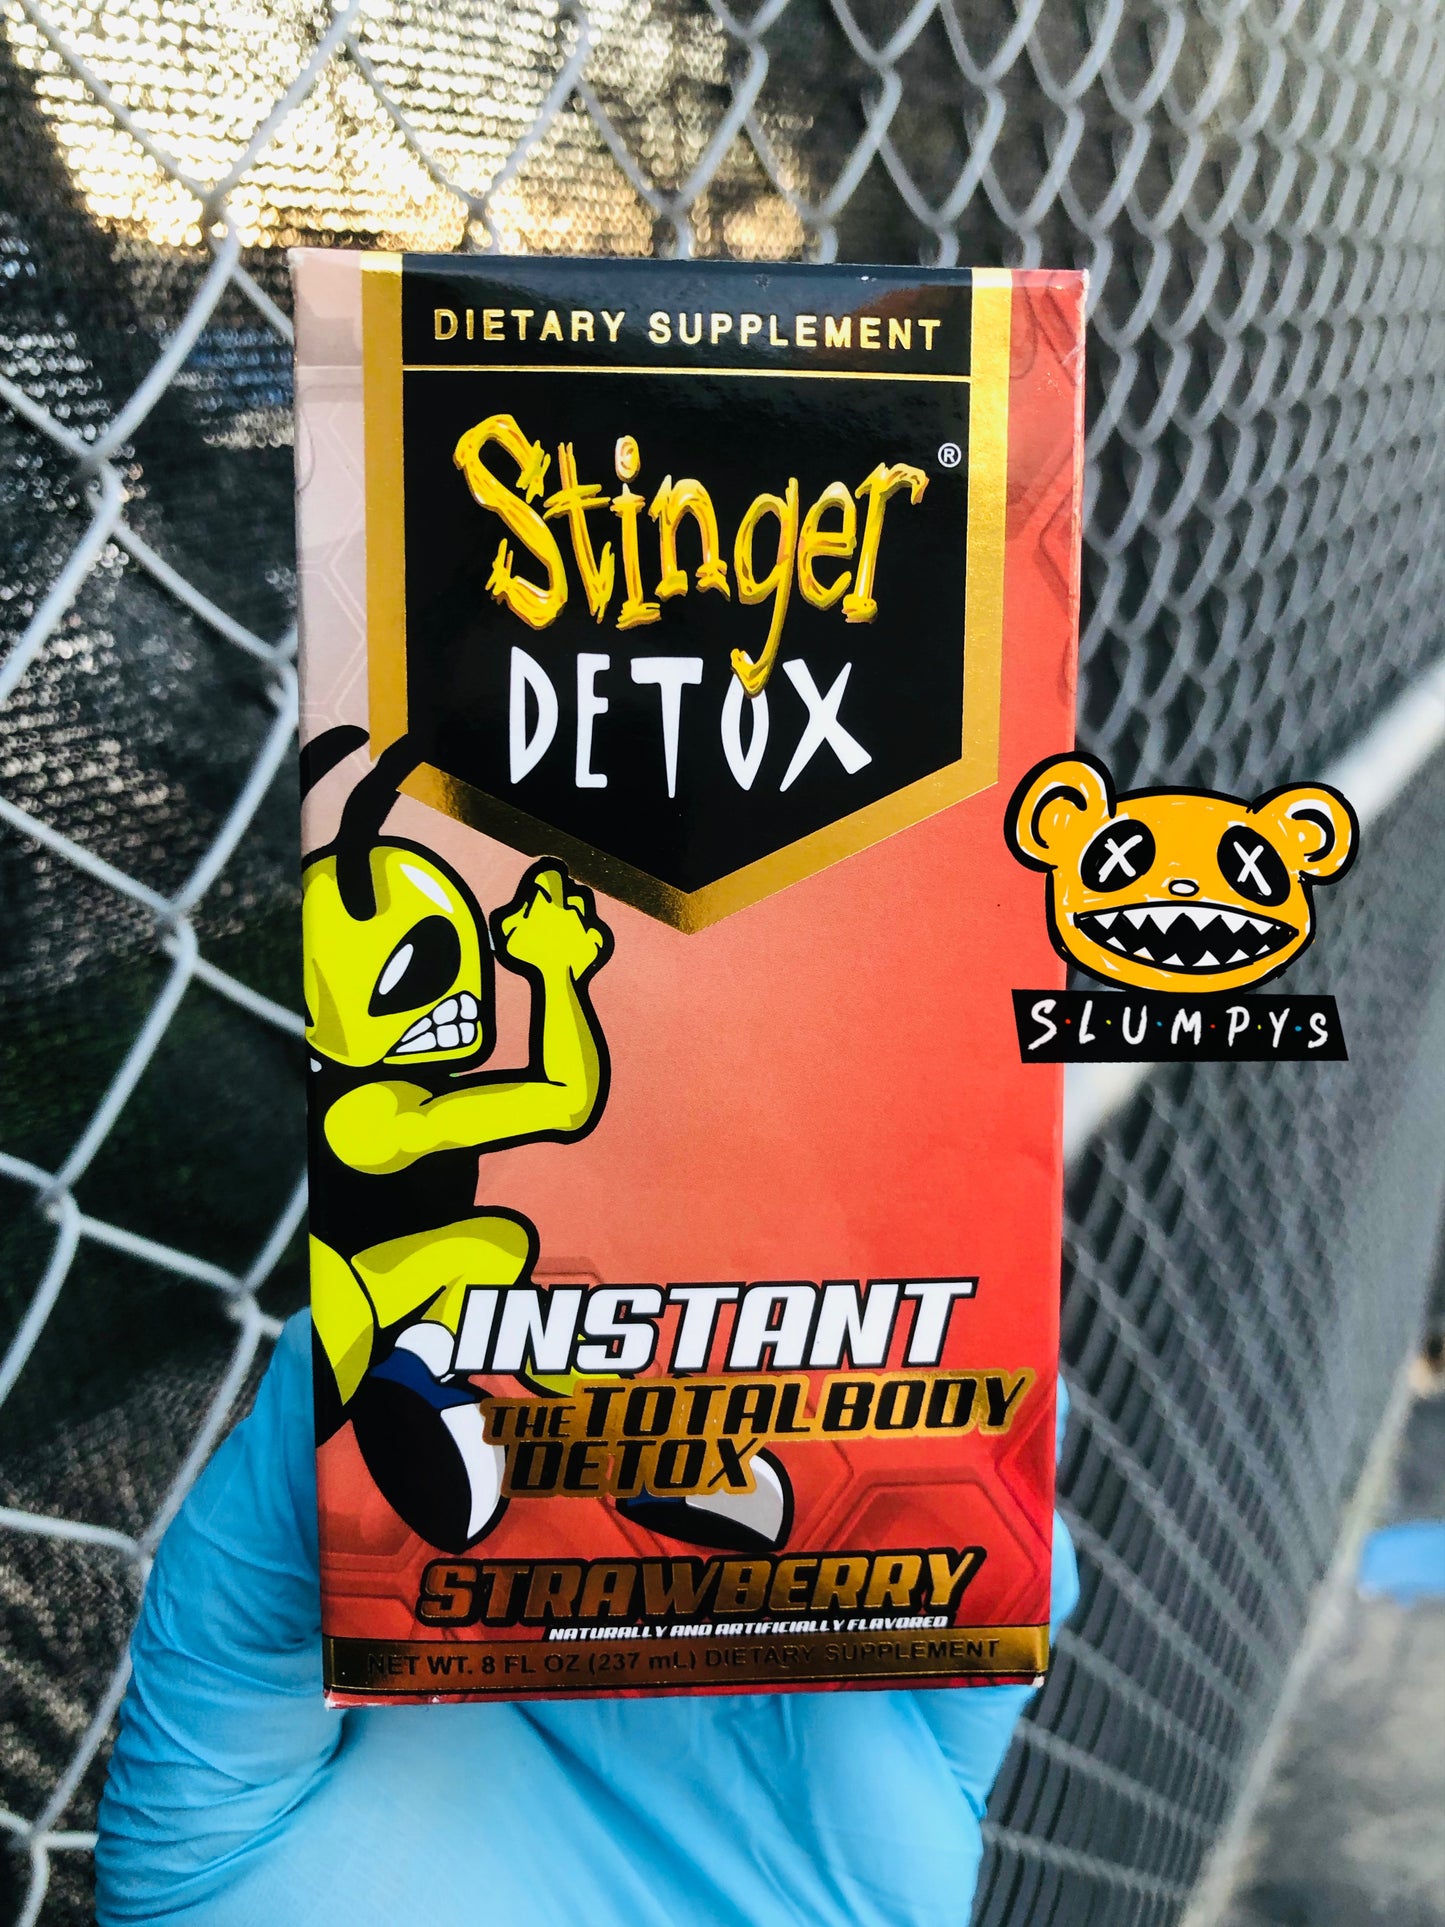 Stinger Detox - Instant Body Detox ( Strawberry )